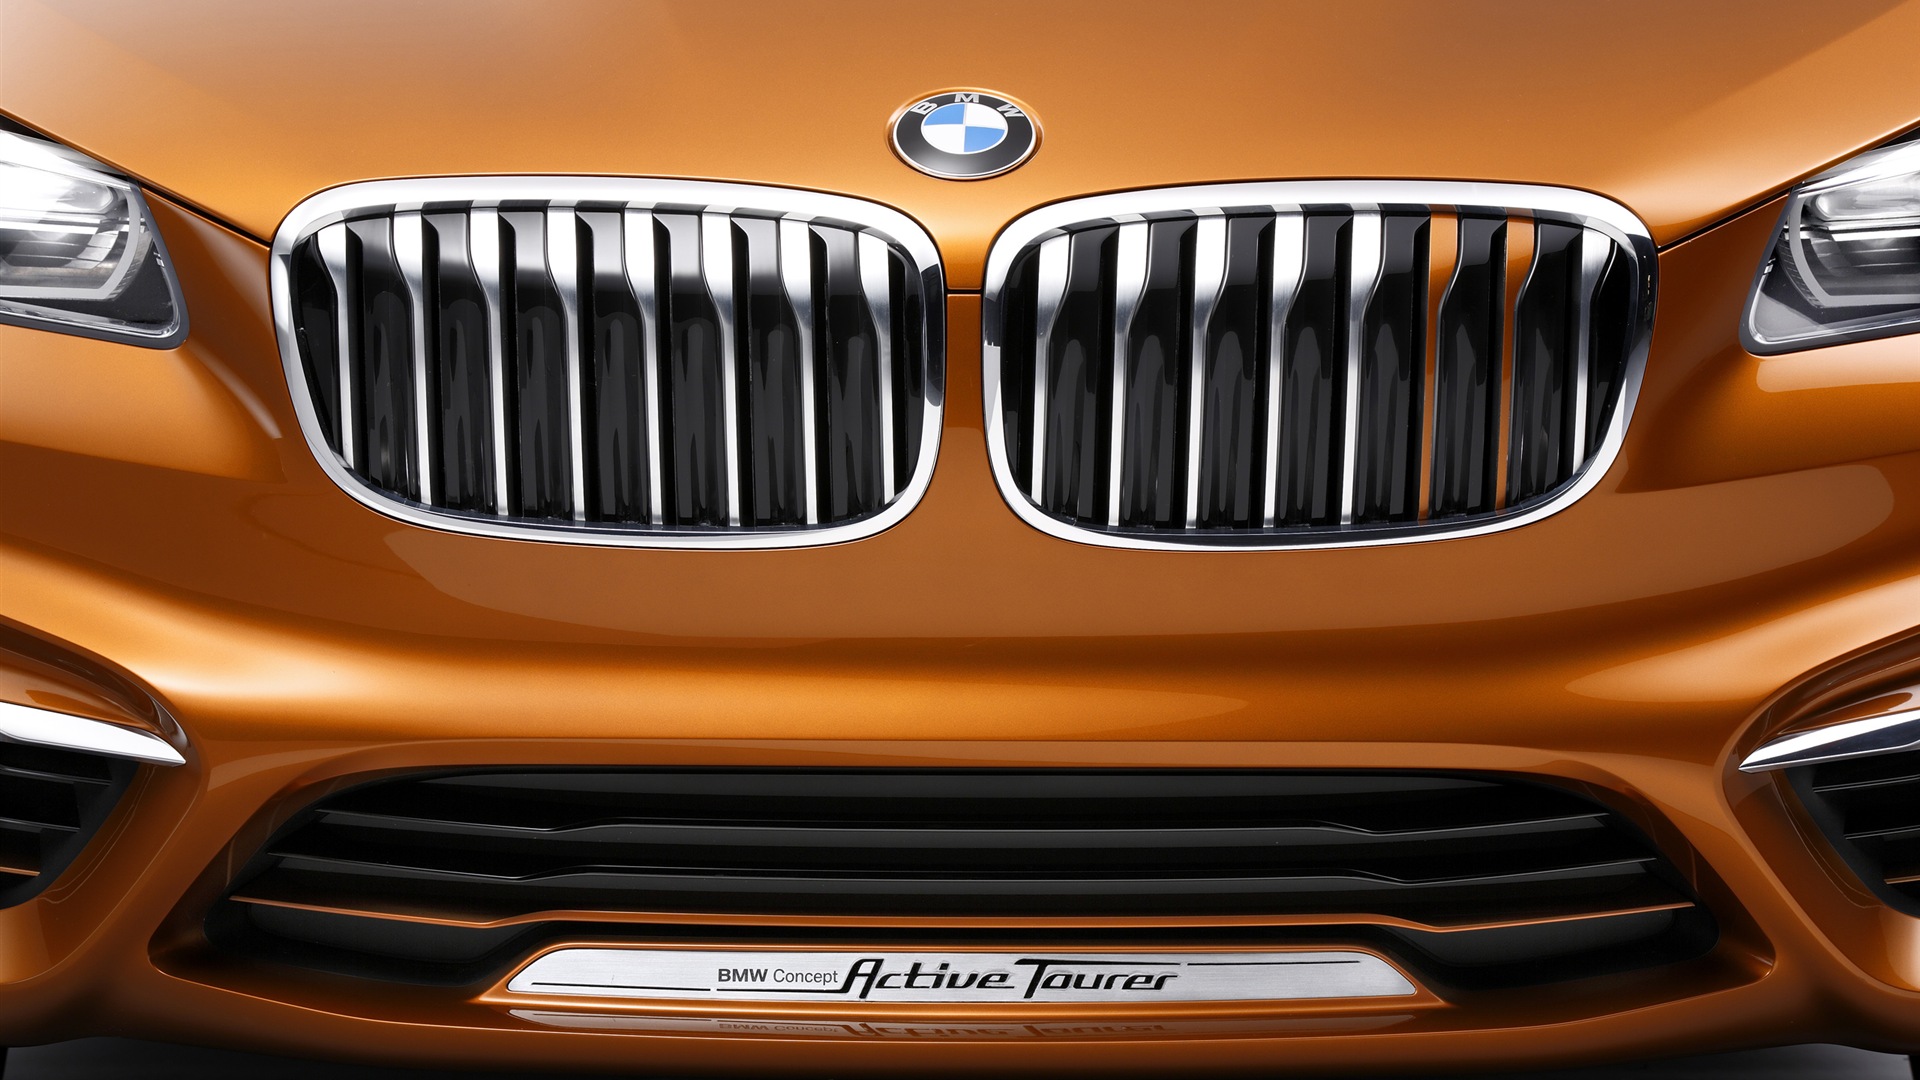 2013 BMW Concept activos Tourer fondos de pantalla de alta definición #15 - 1920x1080